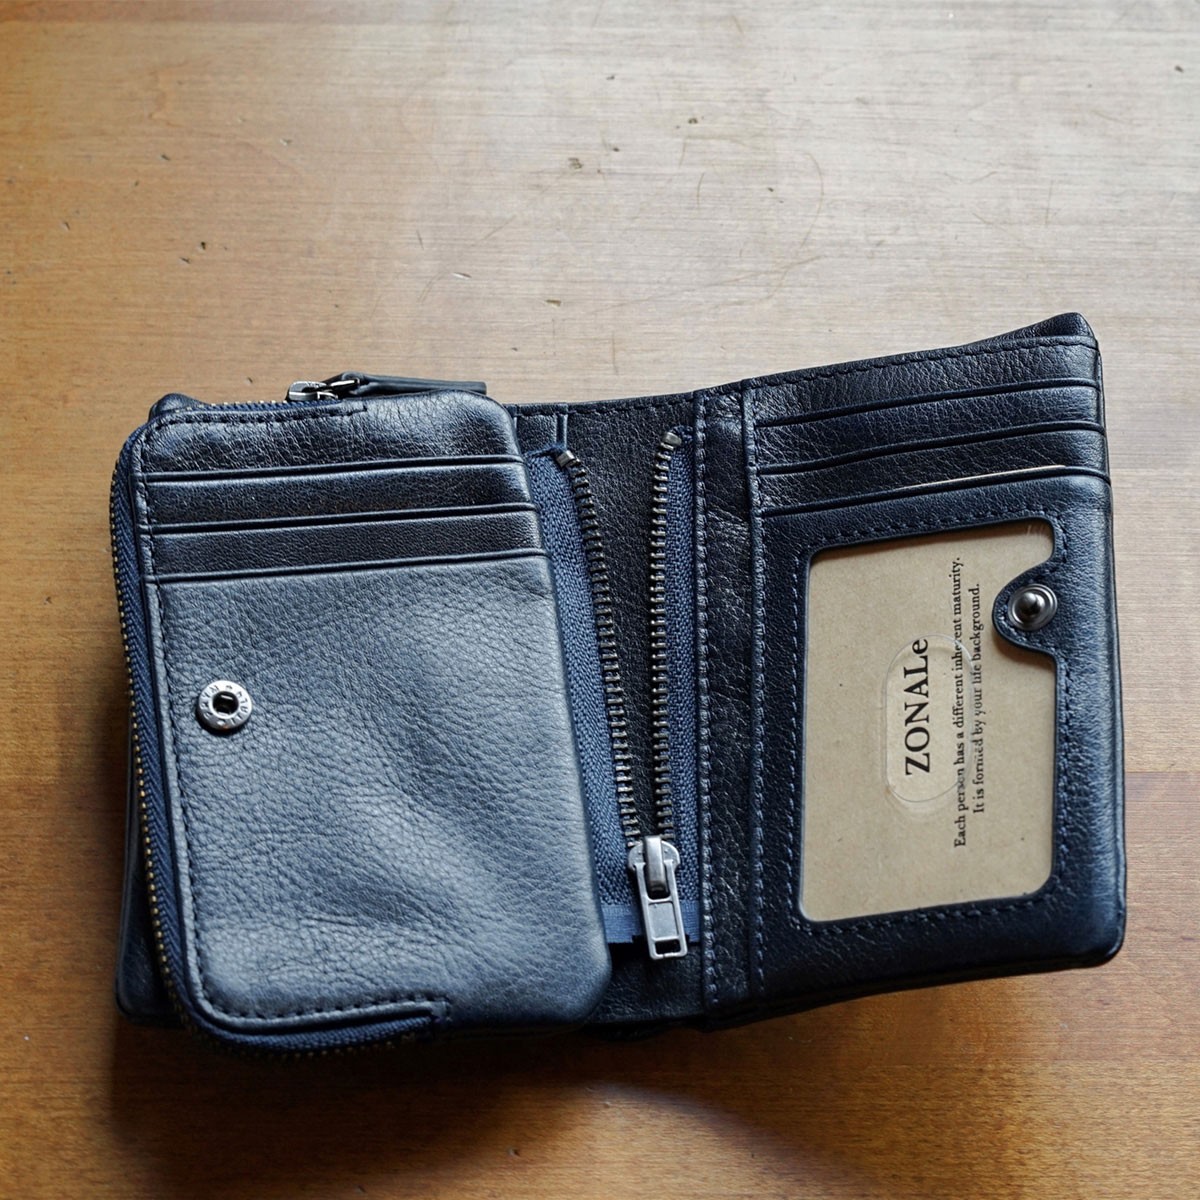 ZONALe 財布 ゾナール 二つ折り財布 2つ折り 本革 革 レザー メンズ